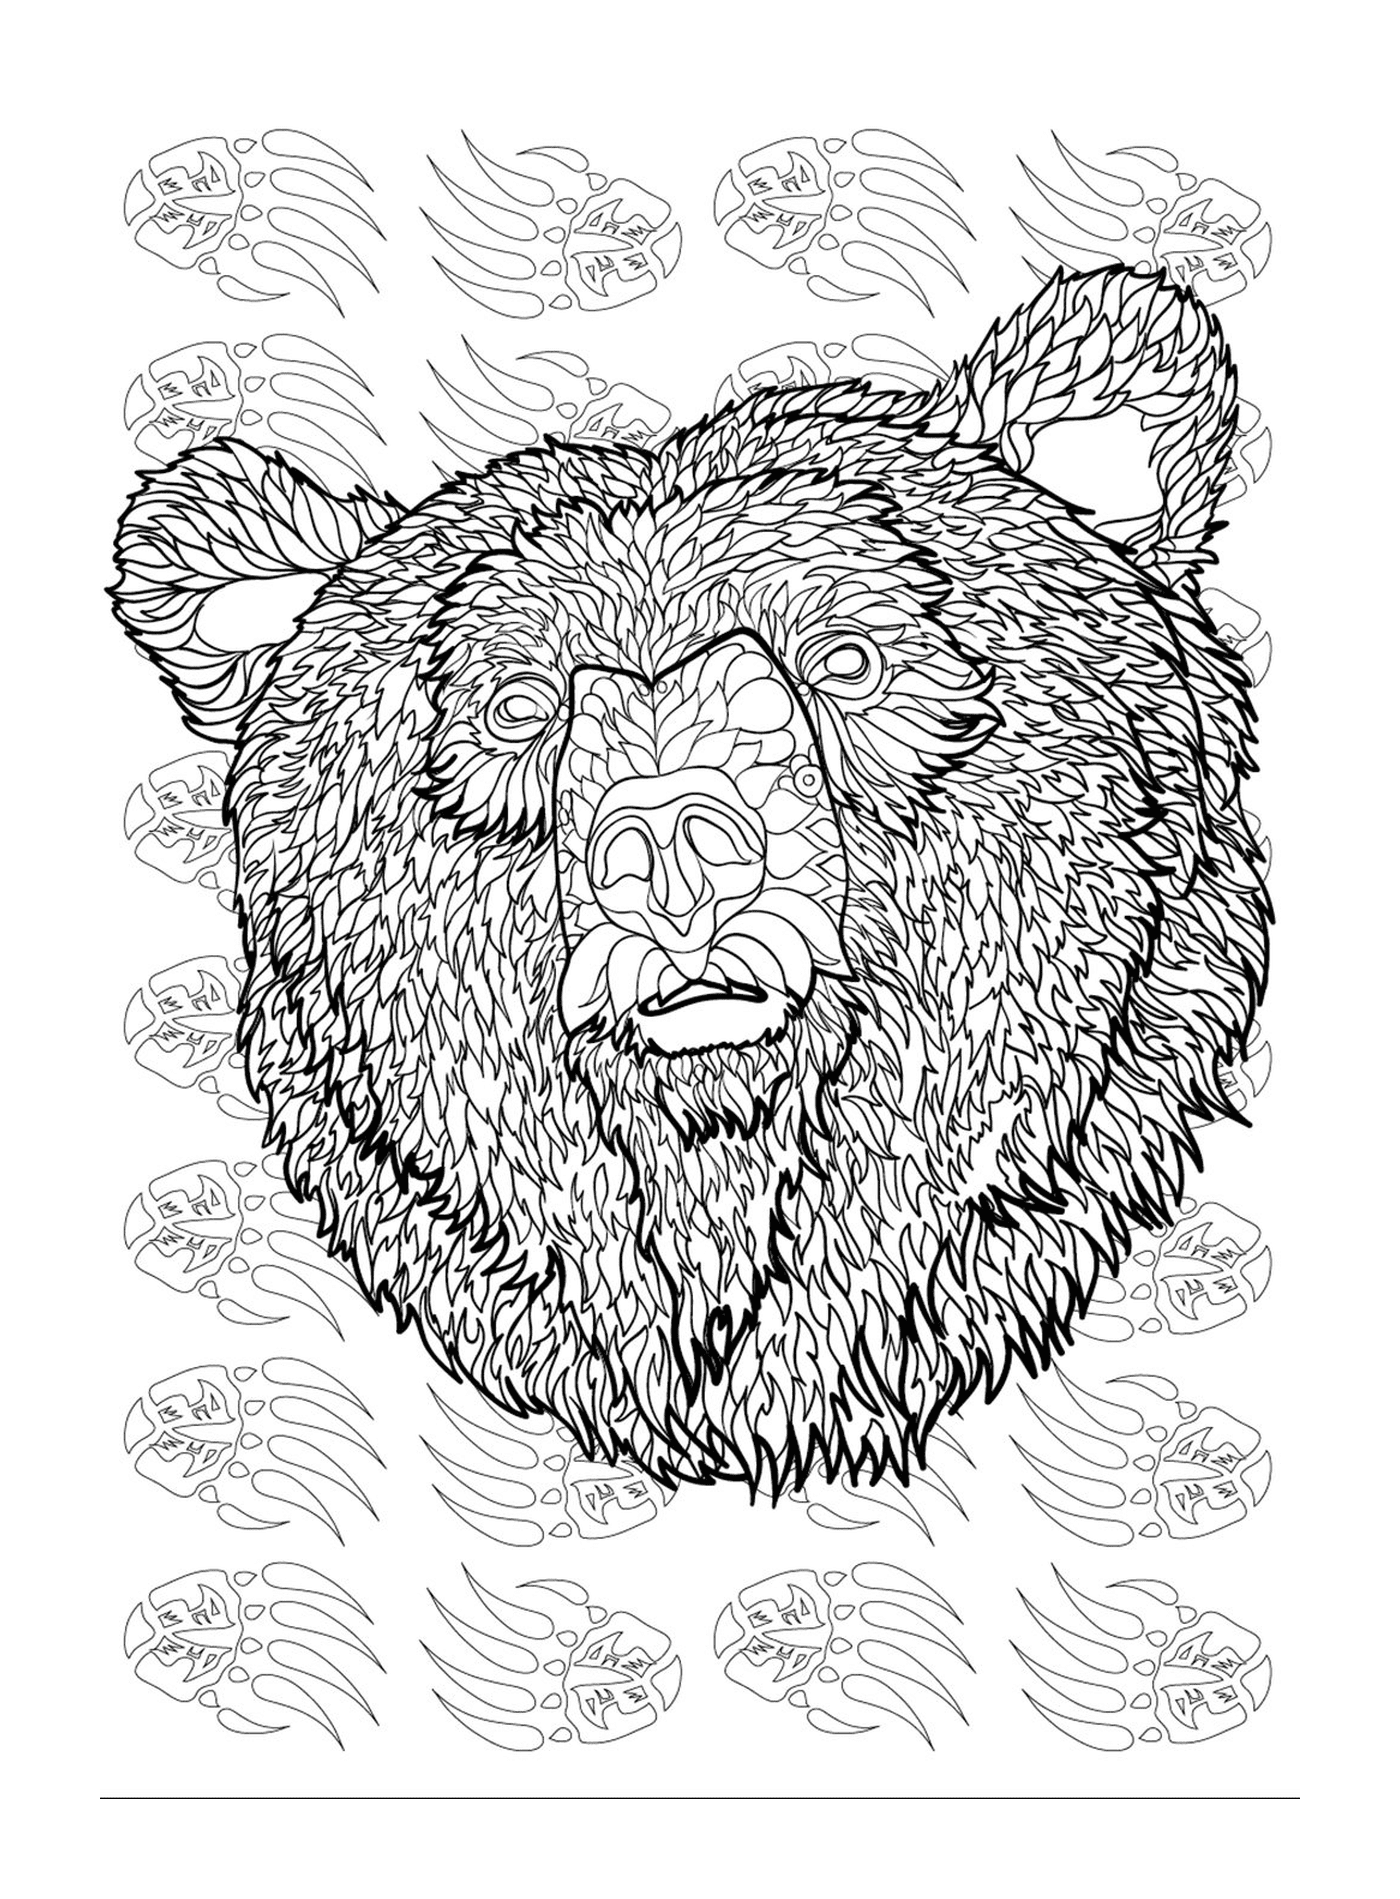  La testa di un orso 